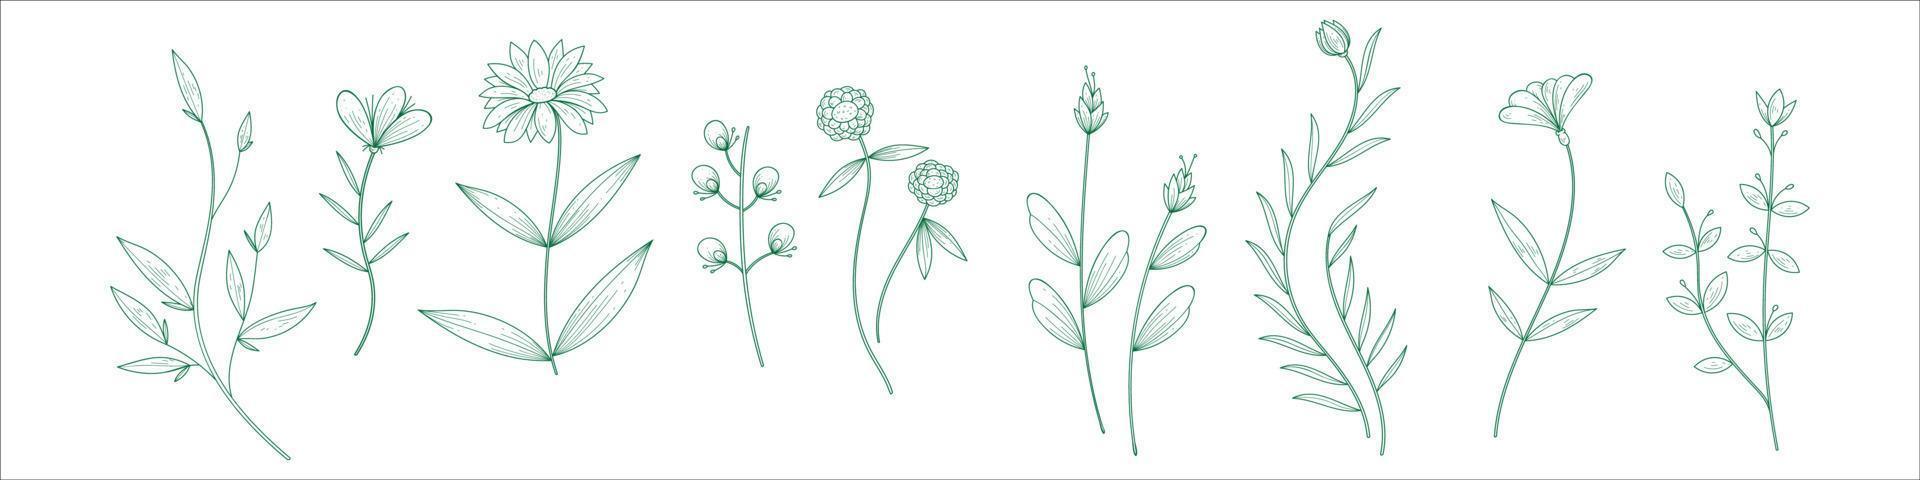 plantas dibujadas a mano vector